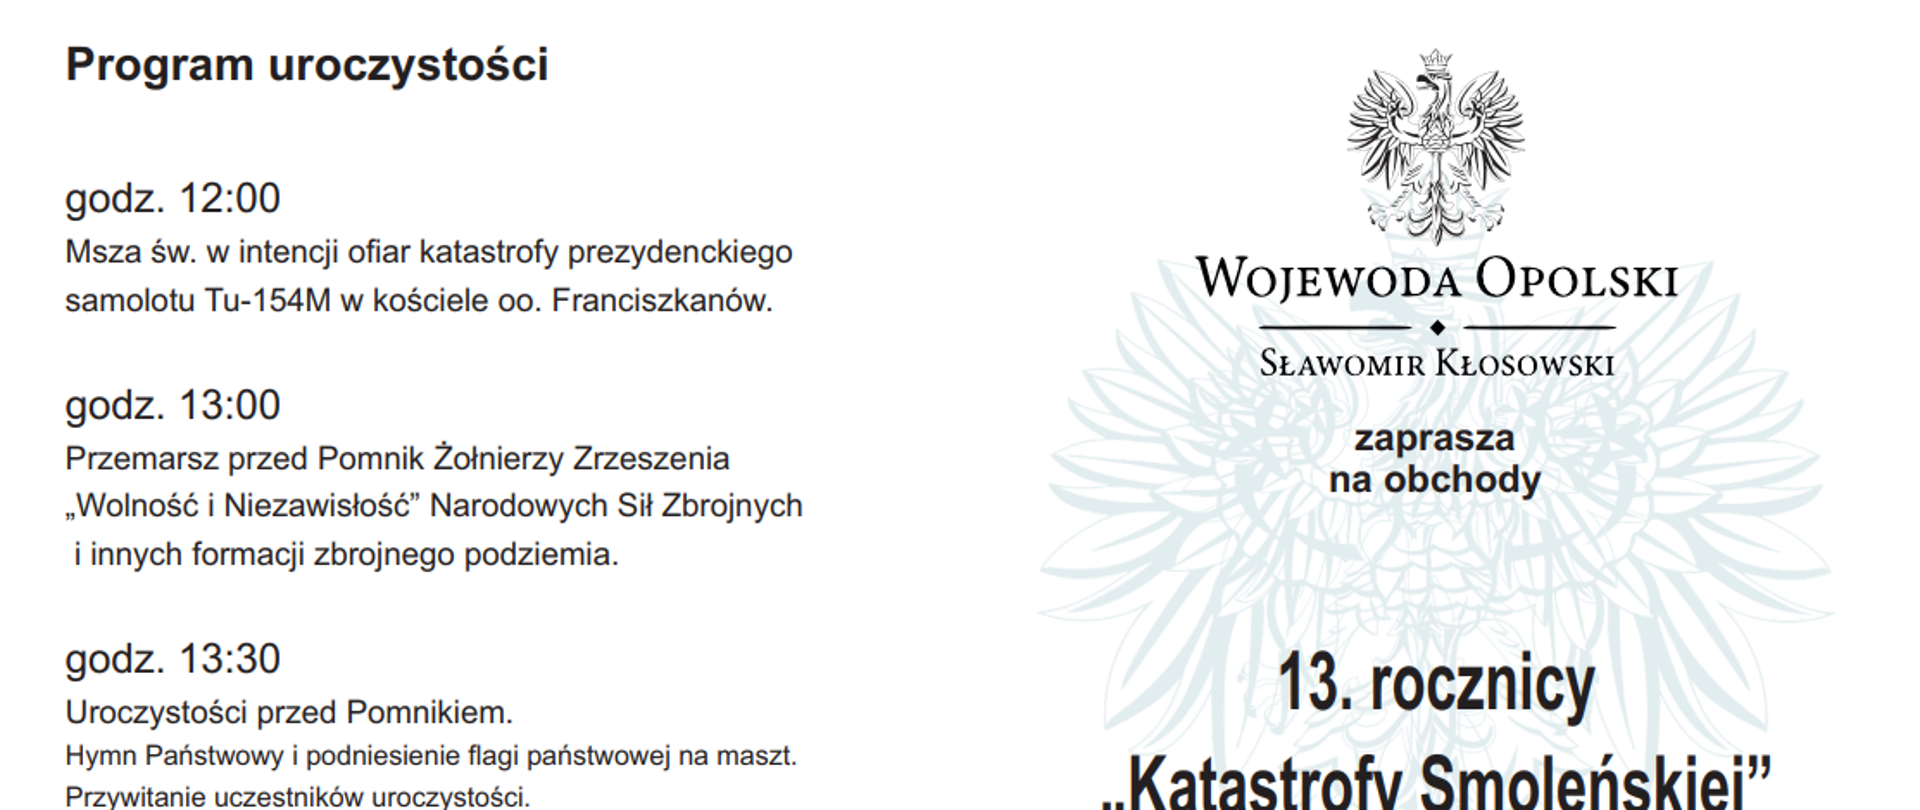 Zaproszenie Wojewody Opolskiego na obchody 13. rocznicy "Katastrofy Smoleńskiej"